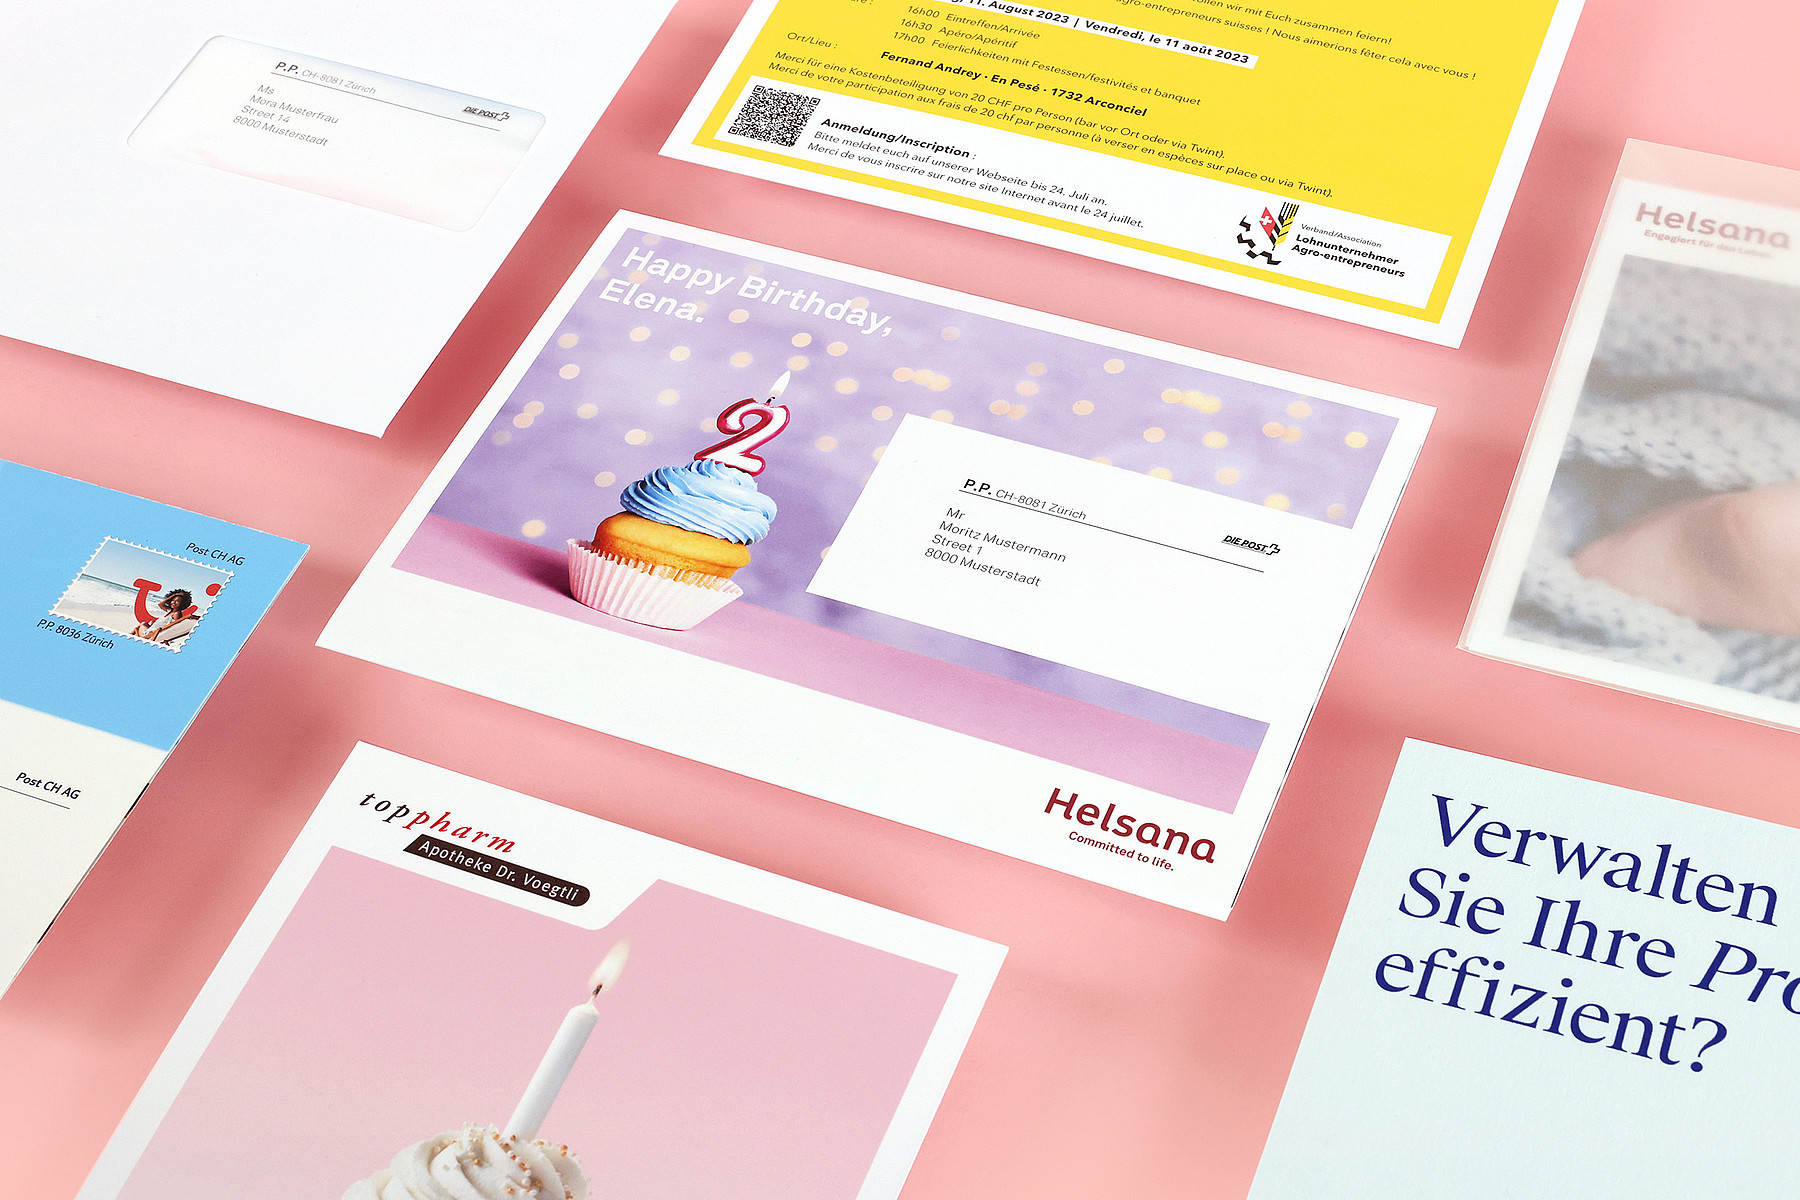 Différents mailings personnalisés produits par Stämpfli Communication, notamment pour Helsana